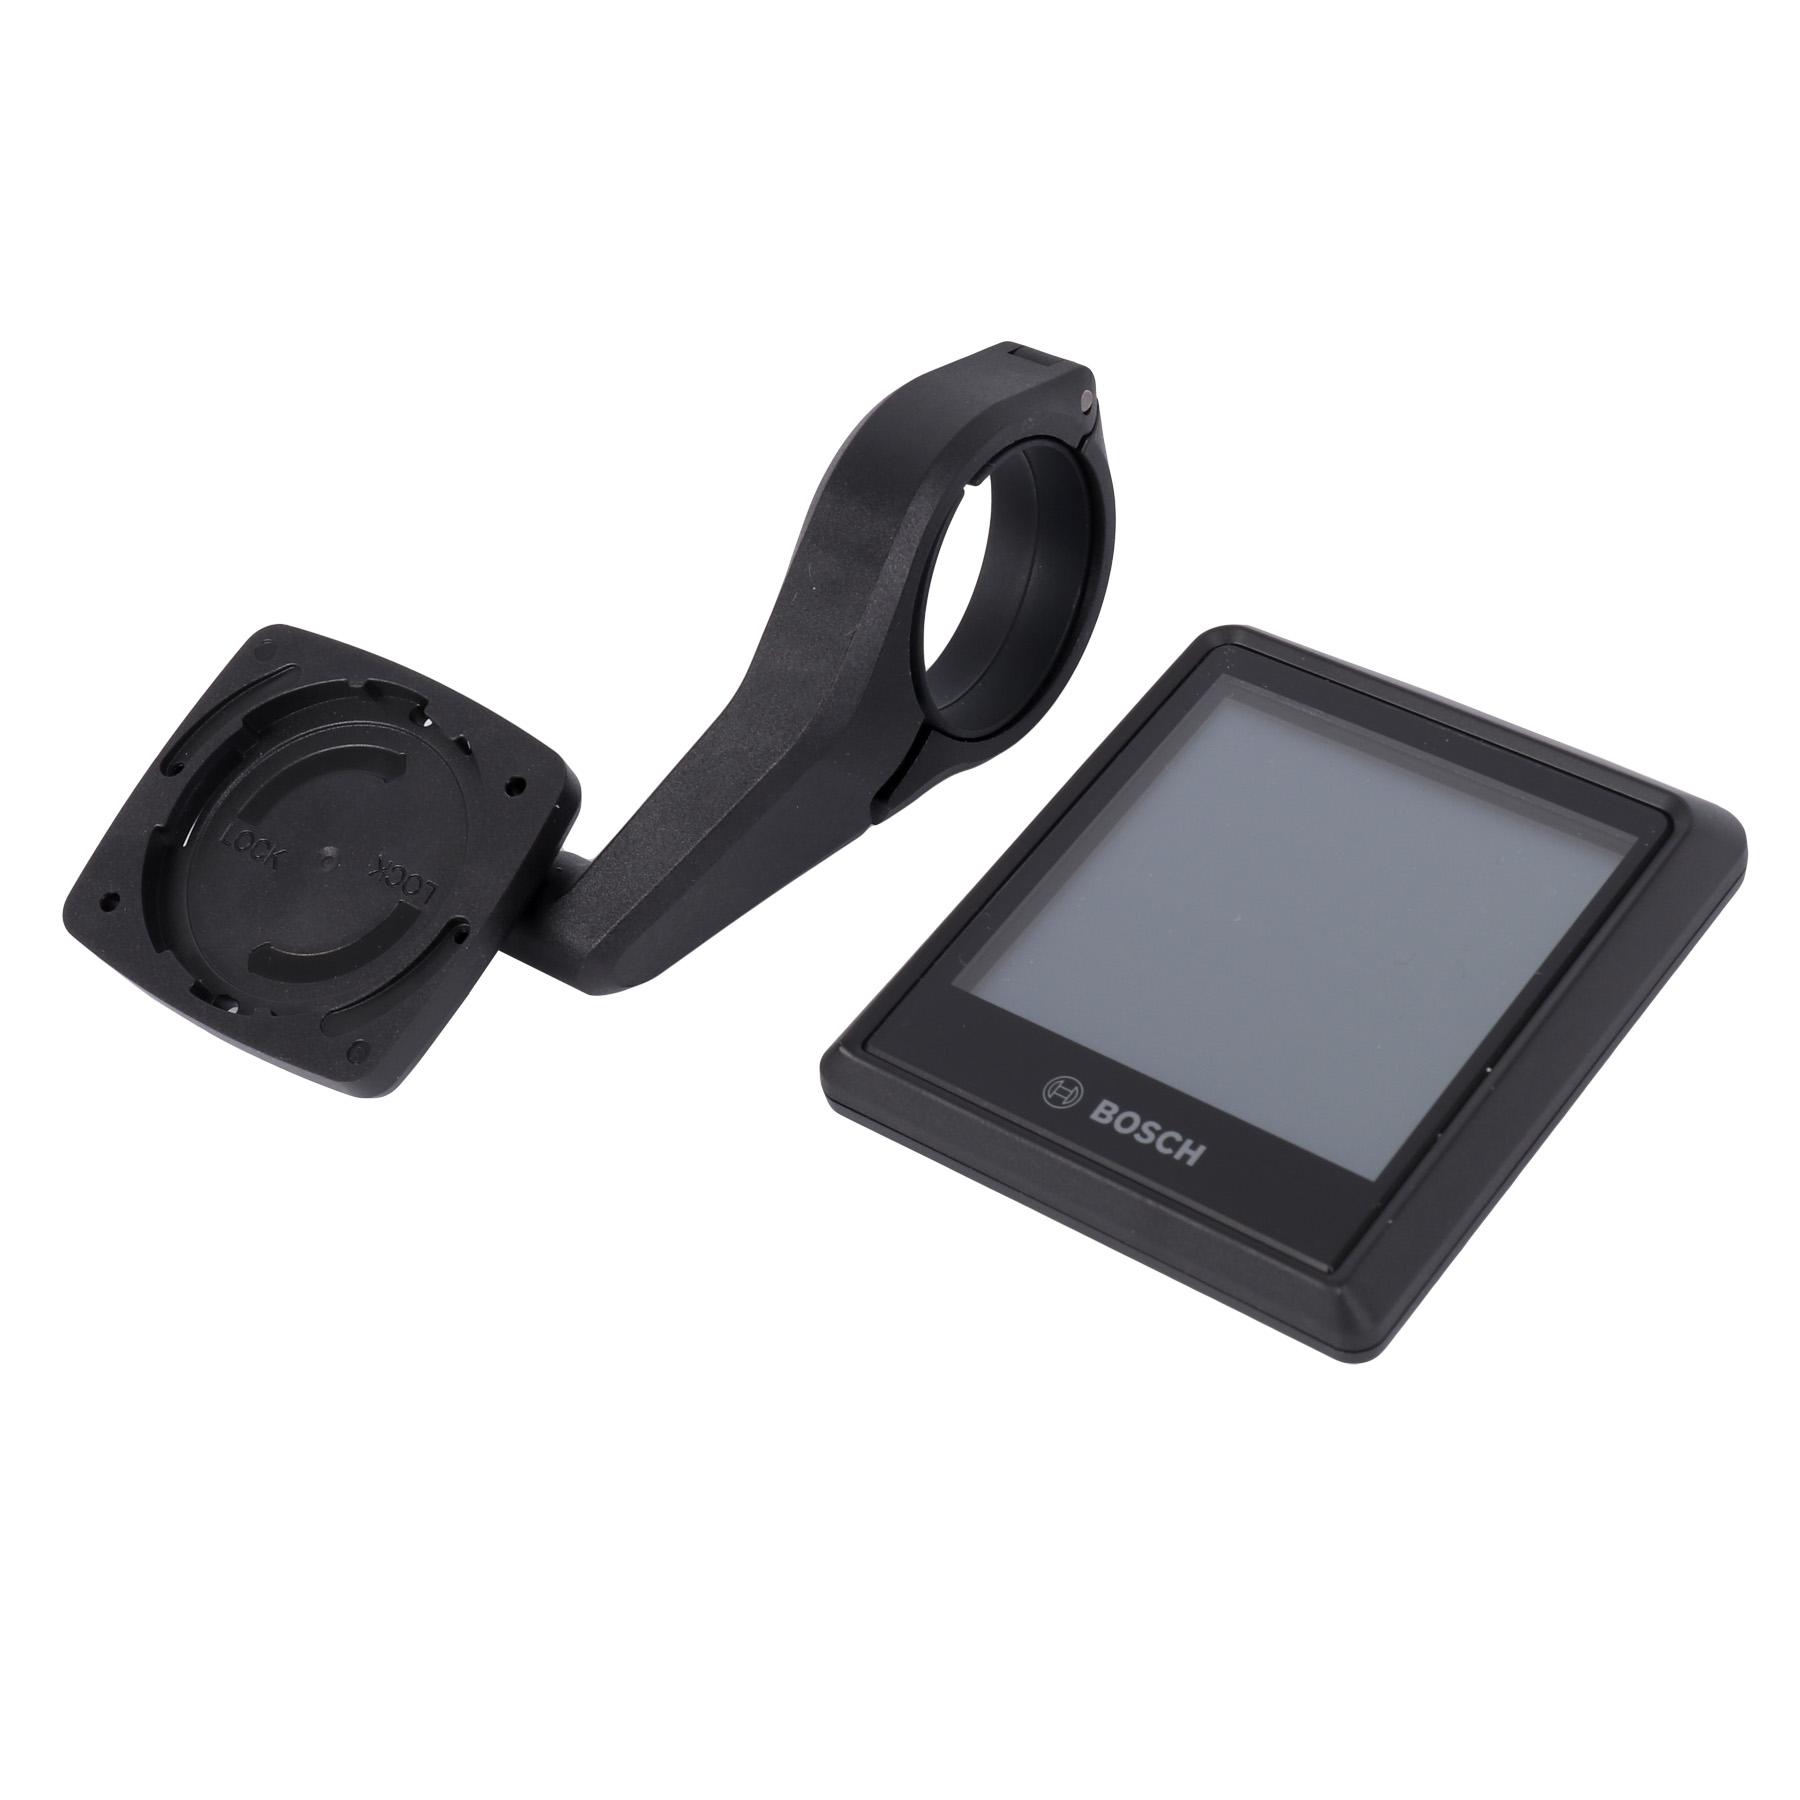 Produktbild von Bosch Intuvia 100 Display Nachrüst-Kit | The Smart System | BHU3200 | 31.8mm - schwarz